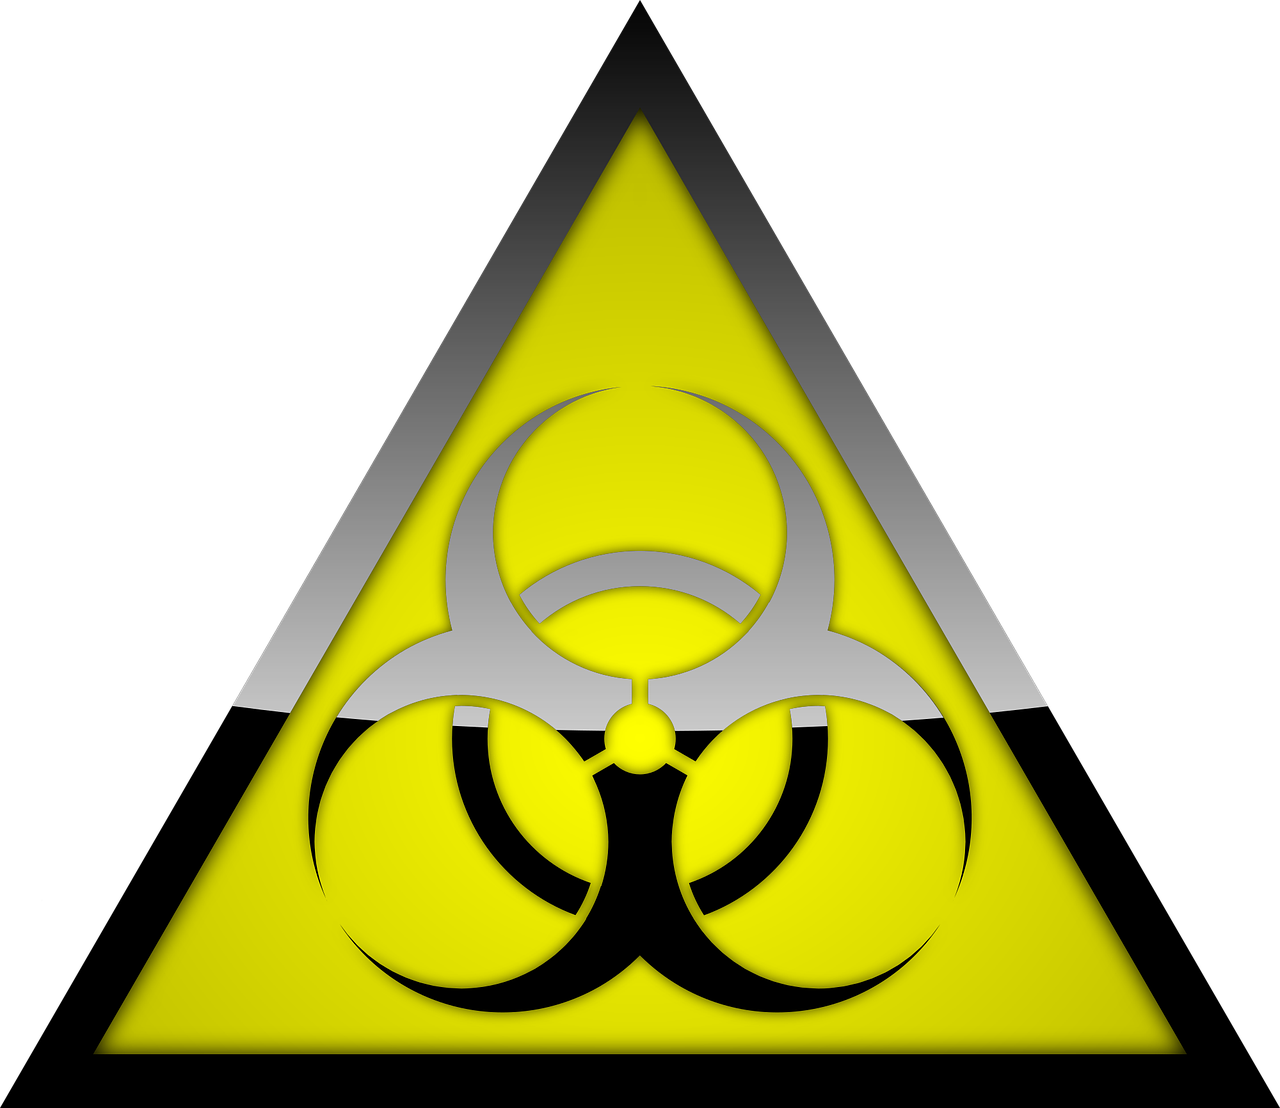 biohazard warning symbol free photo